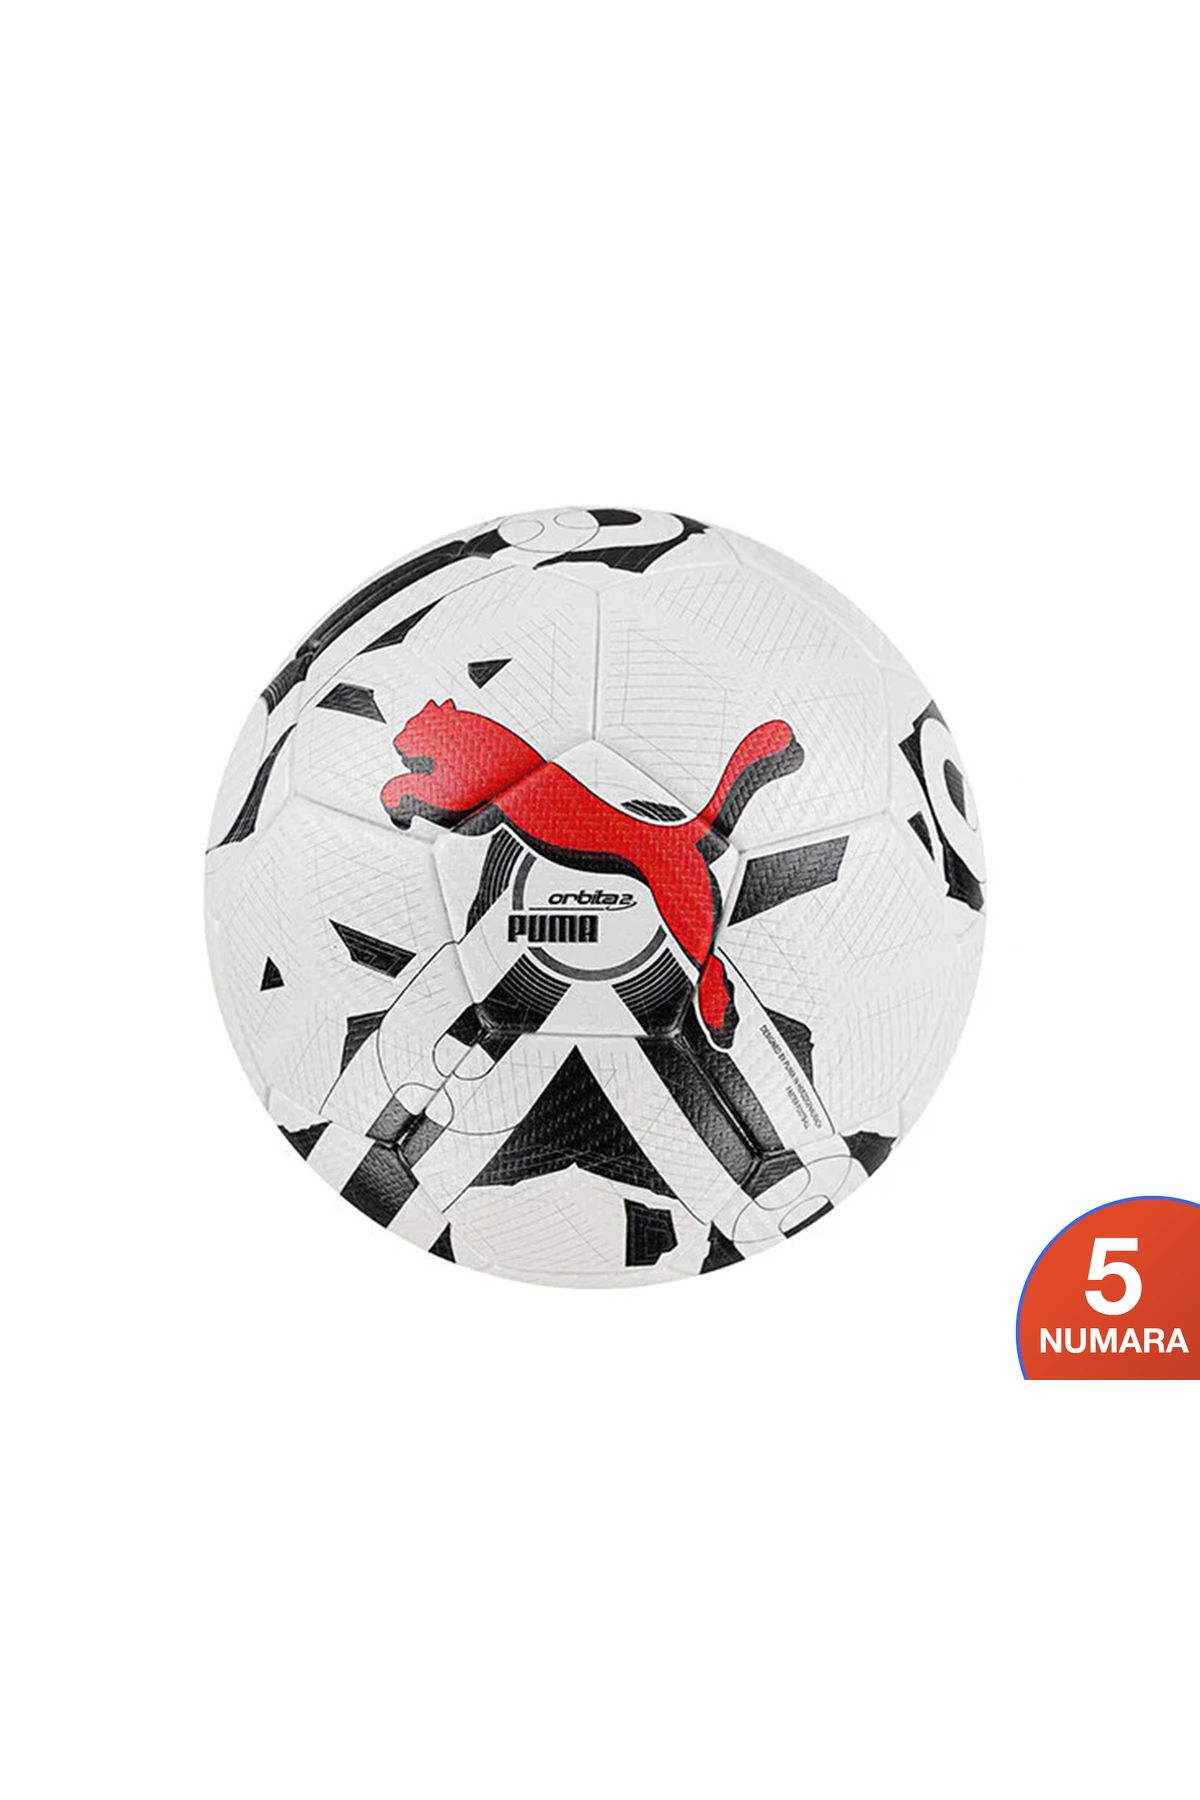 Puma Orbita 2 Tb (Fifa Quality Pro) Futbol Topu Renkli